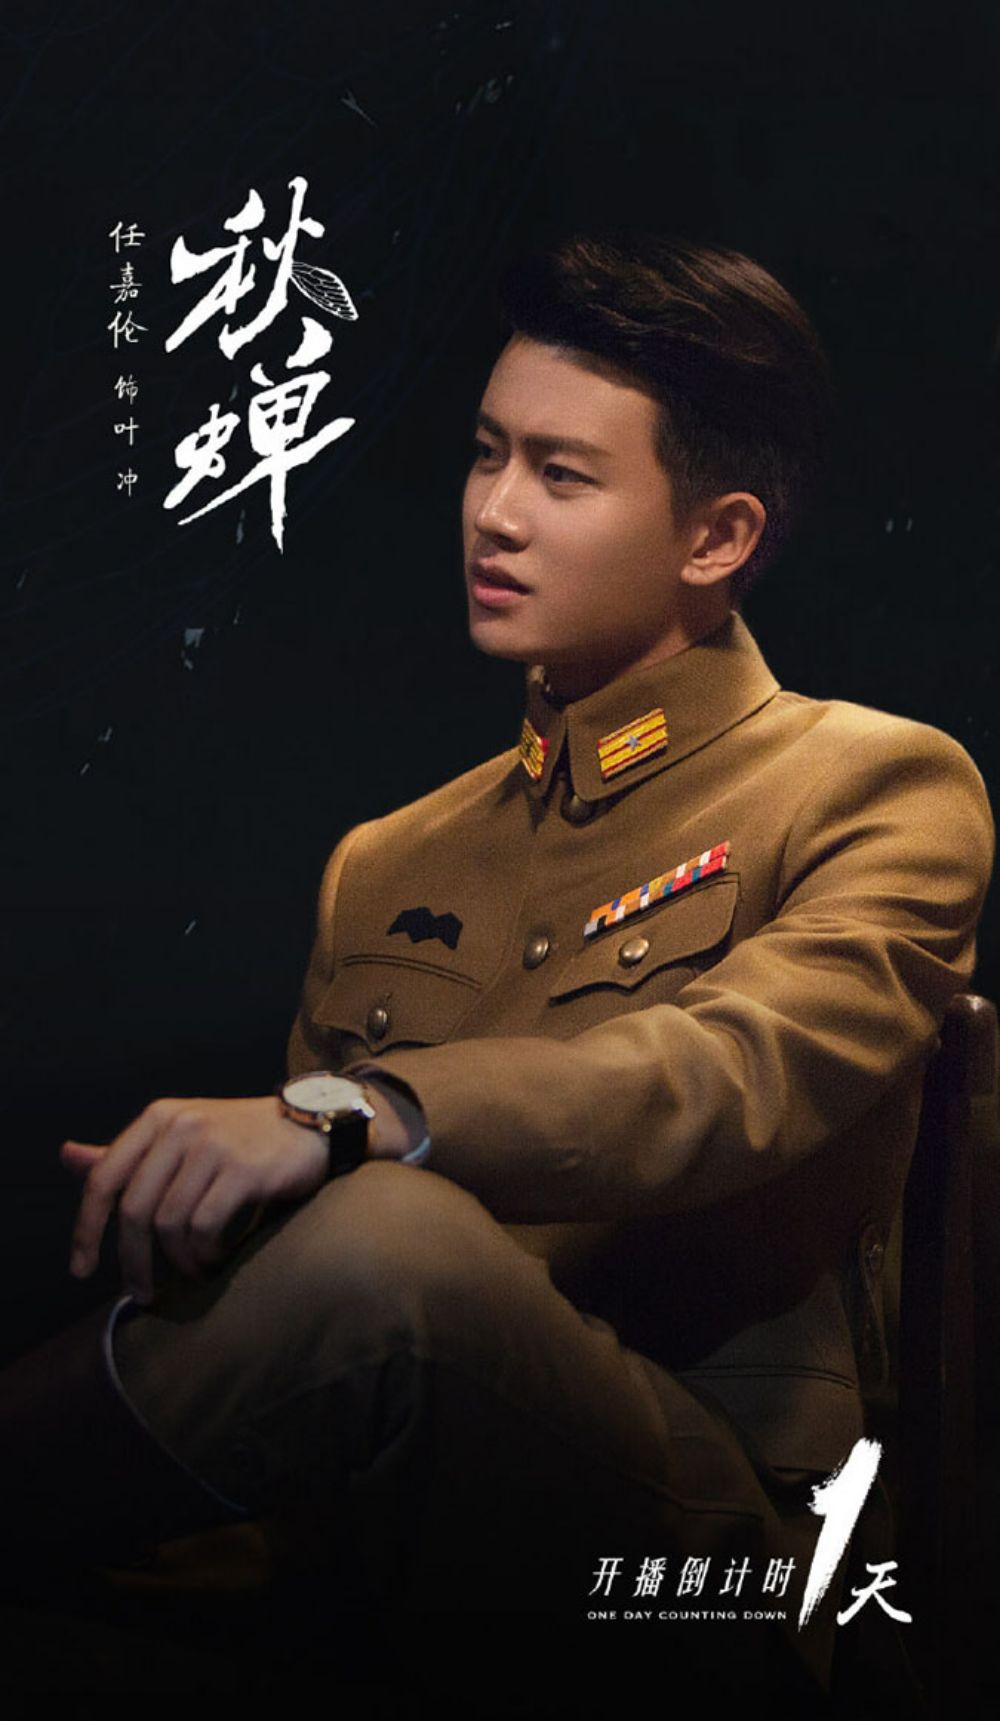 Từ khóa “Thu Thiền”, “Nhậm Gia Luân mặc quân trang” nằm trong Top 20 tìm kiếm Weibo thời điểm phim lên sóng